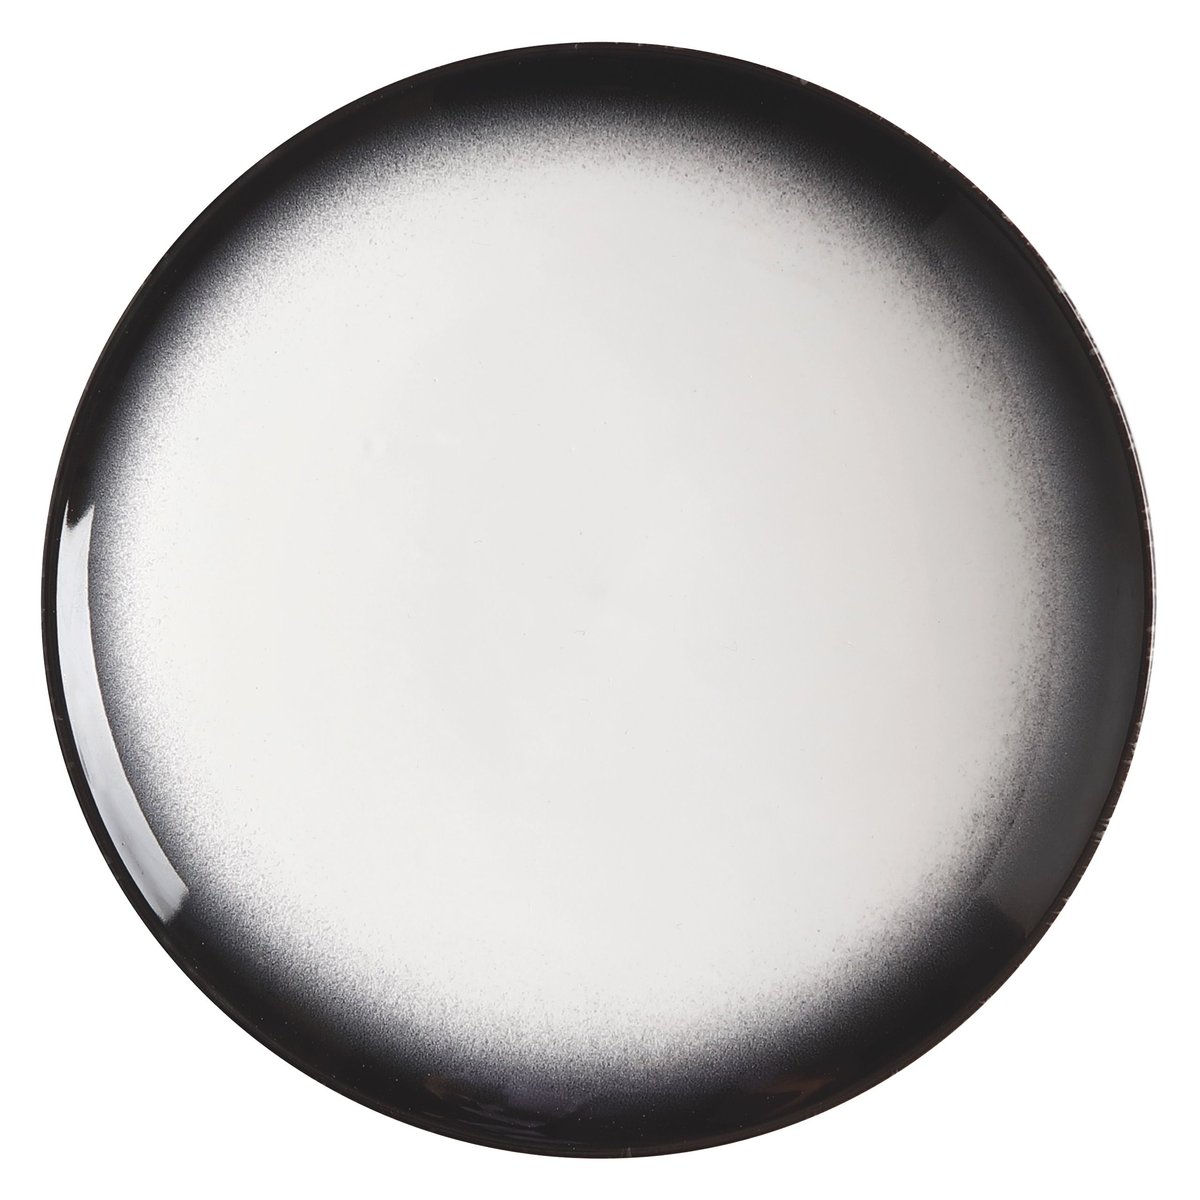 Biało-czarny ceramiczny talerz deserowy Maxwell & Williams Caviar, ø 20 cm